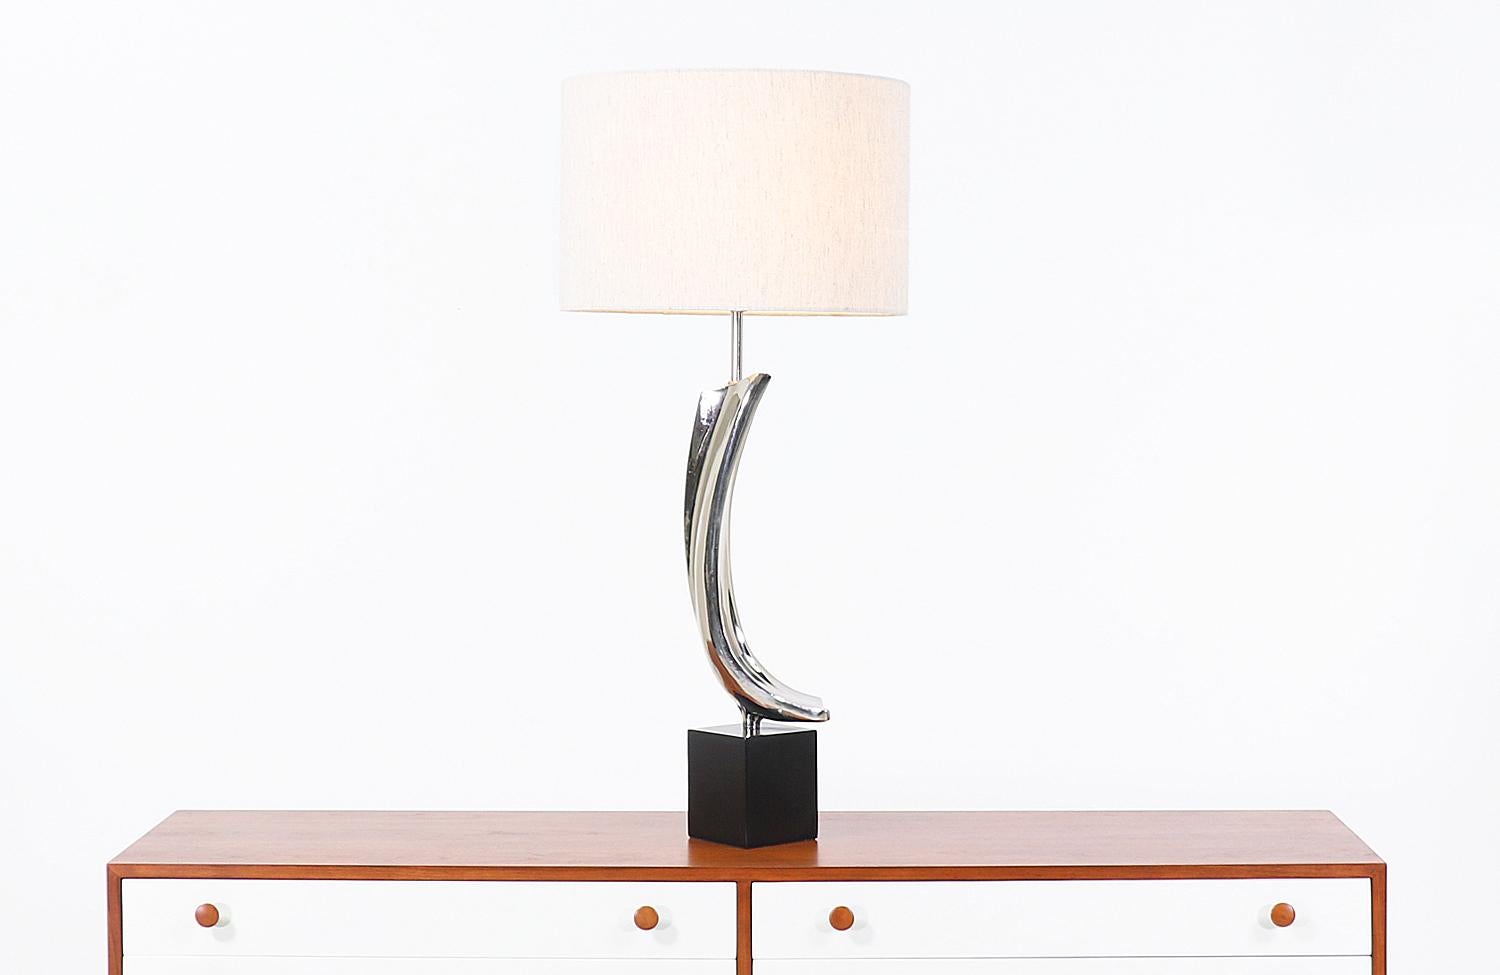 Lampe de table moderne conçue par Richard Barr et Harold Weiss pour Laurel Lamp Co. aux États-Unis, circa les années 1960. Cette lampe de table unique est dotée d'un corps sculptural en chrome nickelé qui repose sur une base rectangulaire en métal